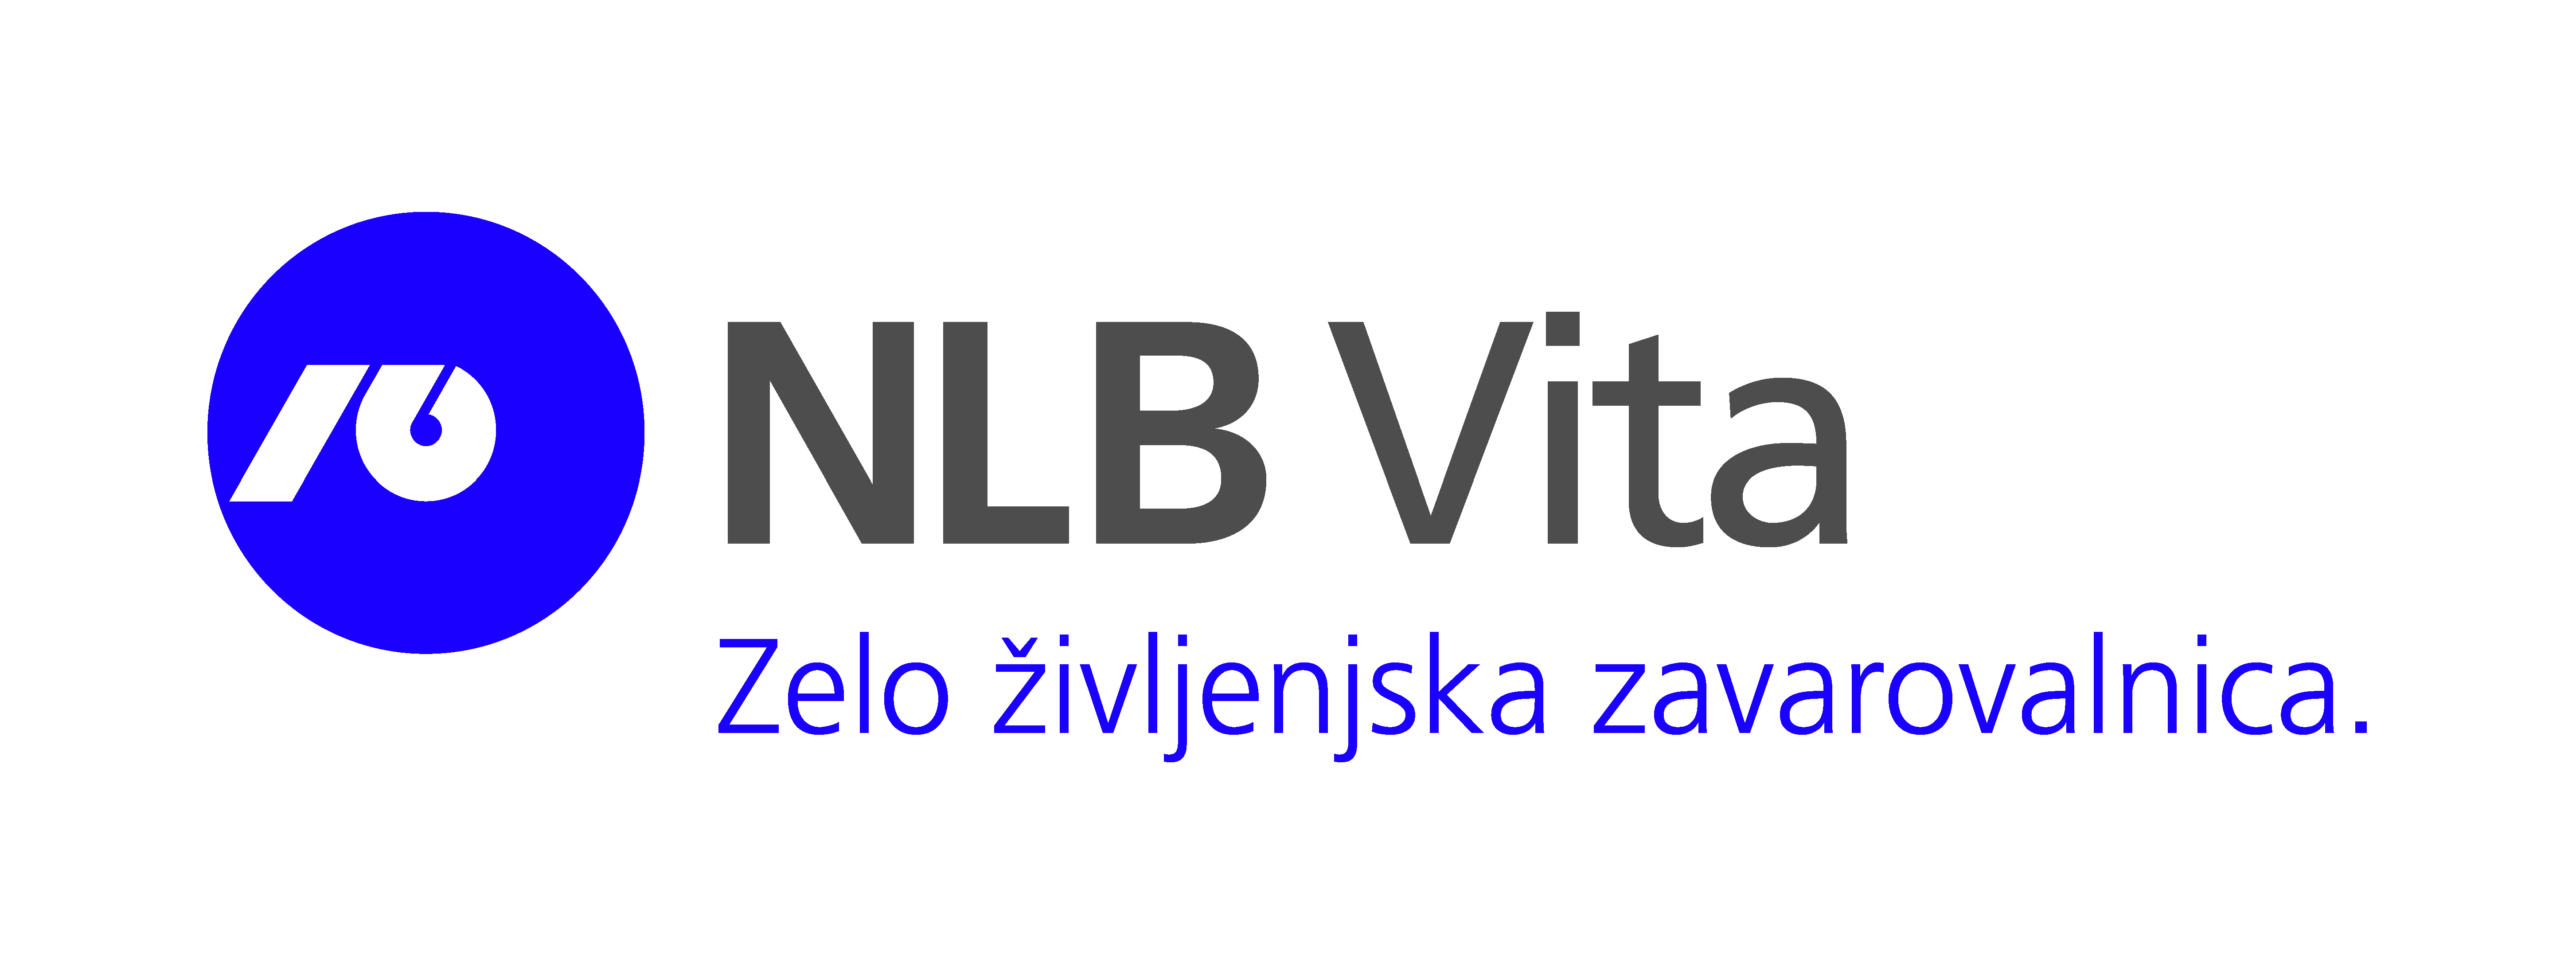 Sponsor of the Cultural Education Programme: NLB Vita, življenjska zavarovalnica Ljubljana